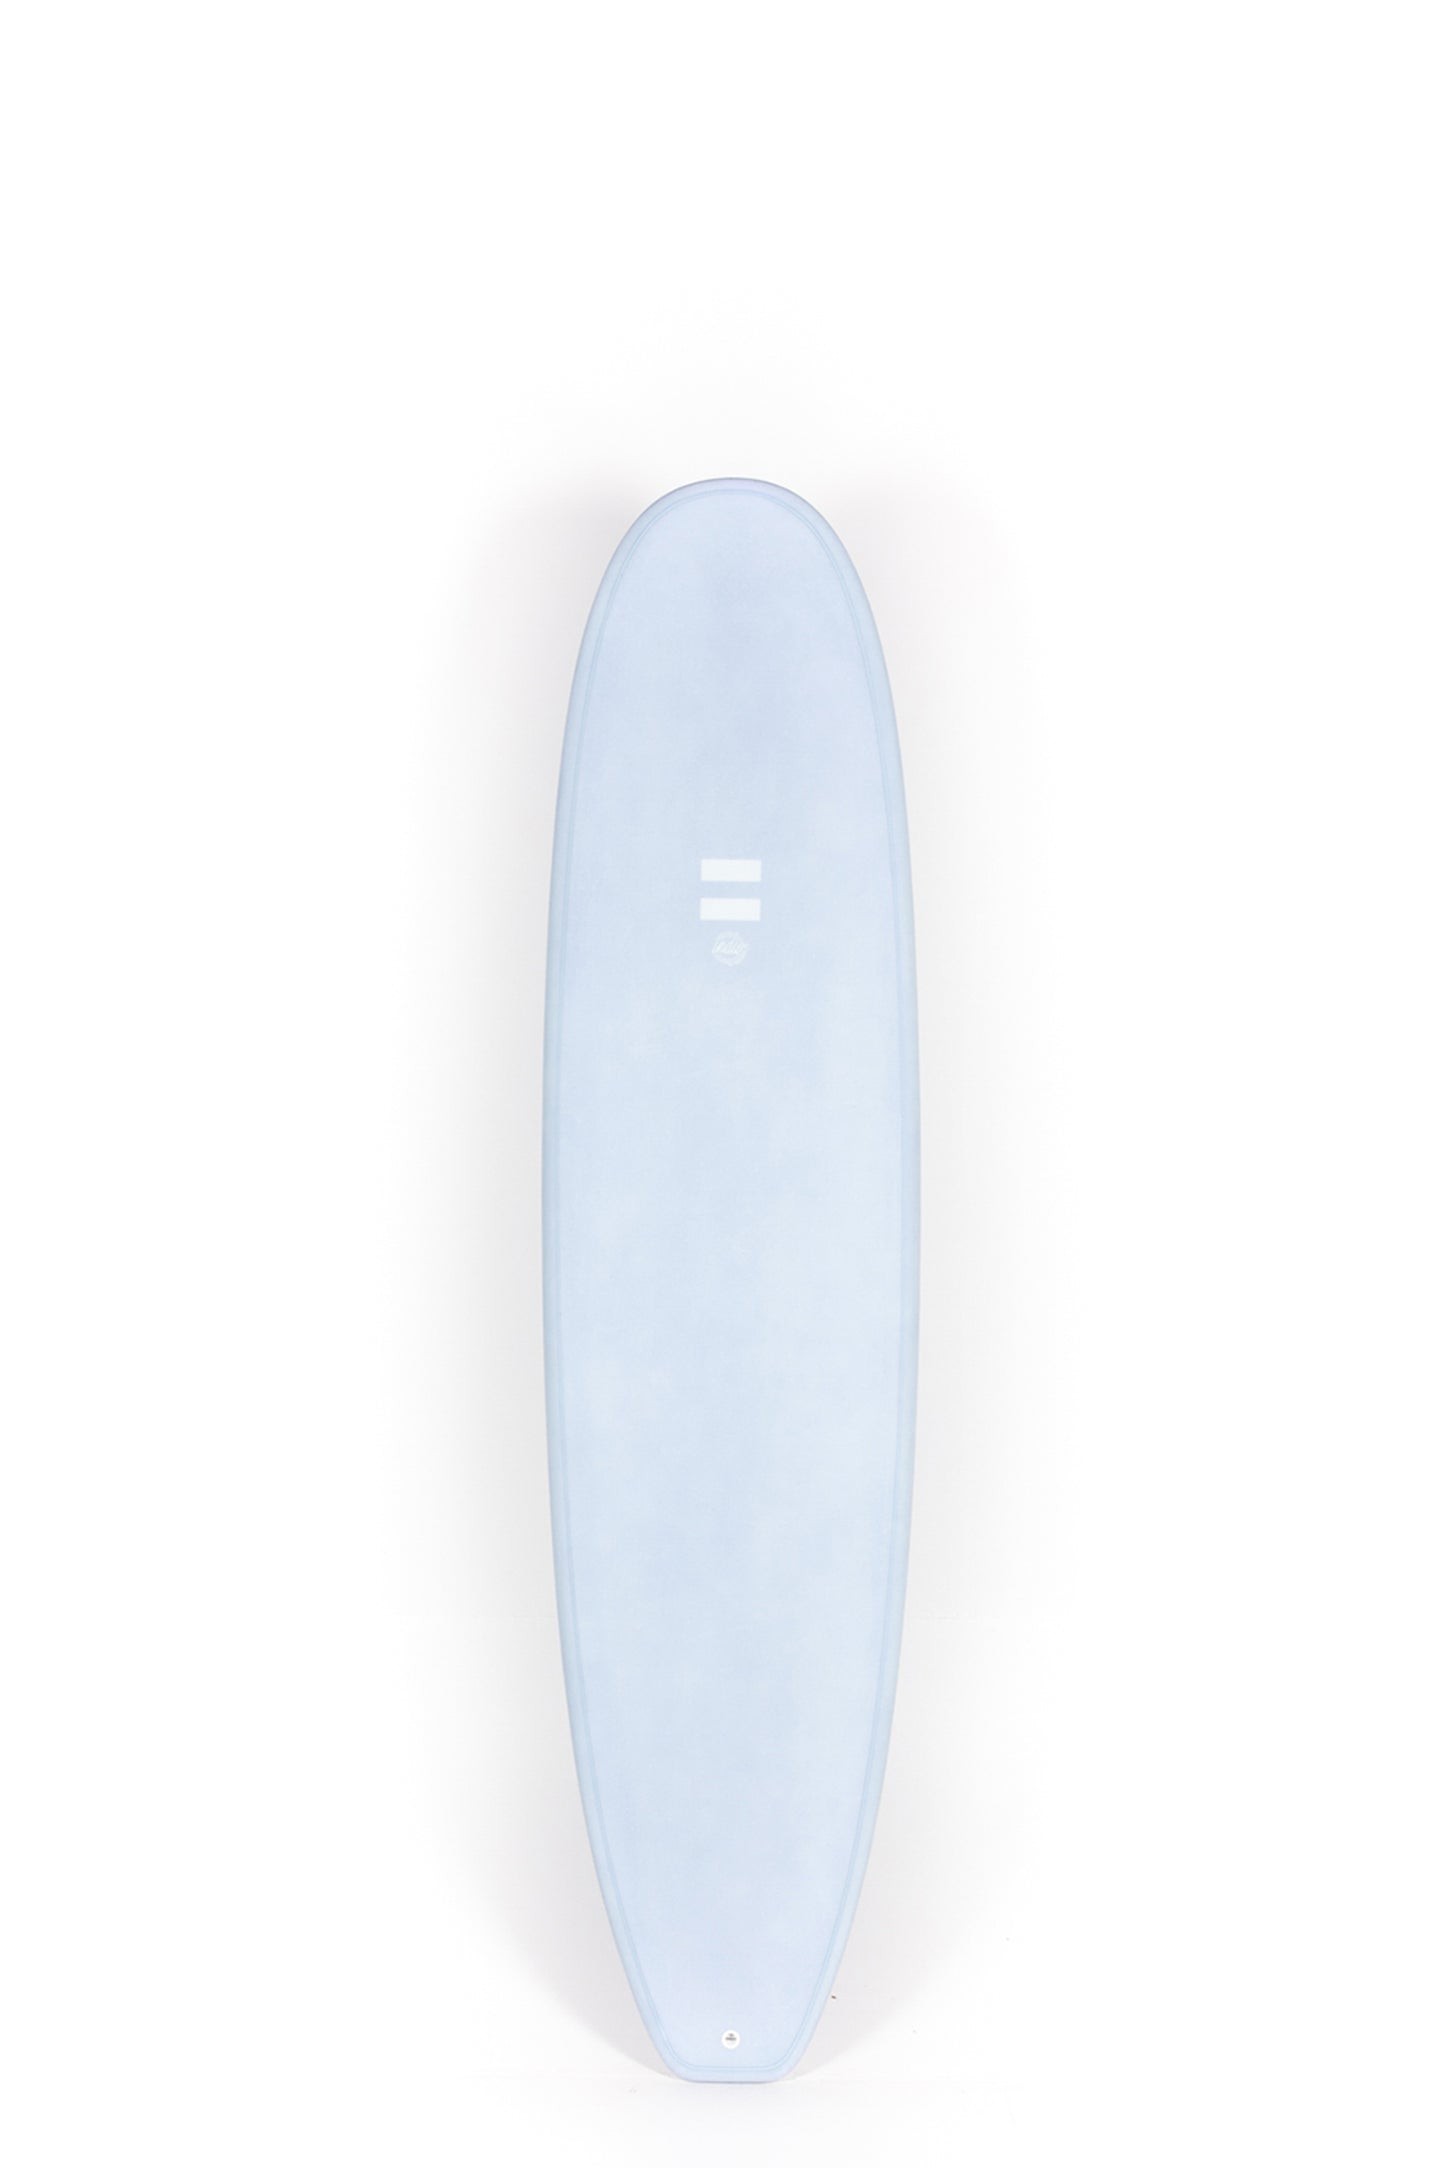 
                  
                    Pukas Surf Shop Indio Surfboards - MID LENGTH Light Blue - 7´0 x 21 3/8 x 2 7/8 - 49,40L
                  
                